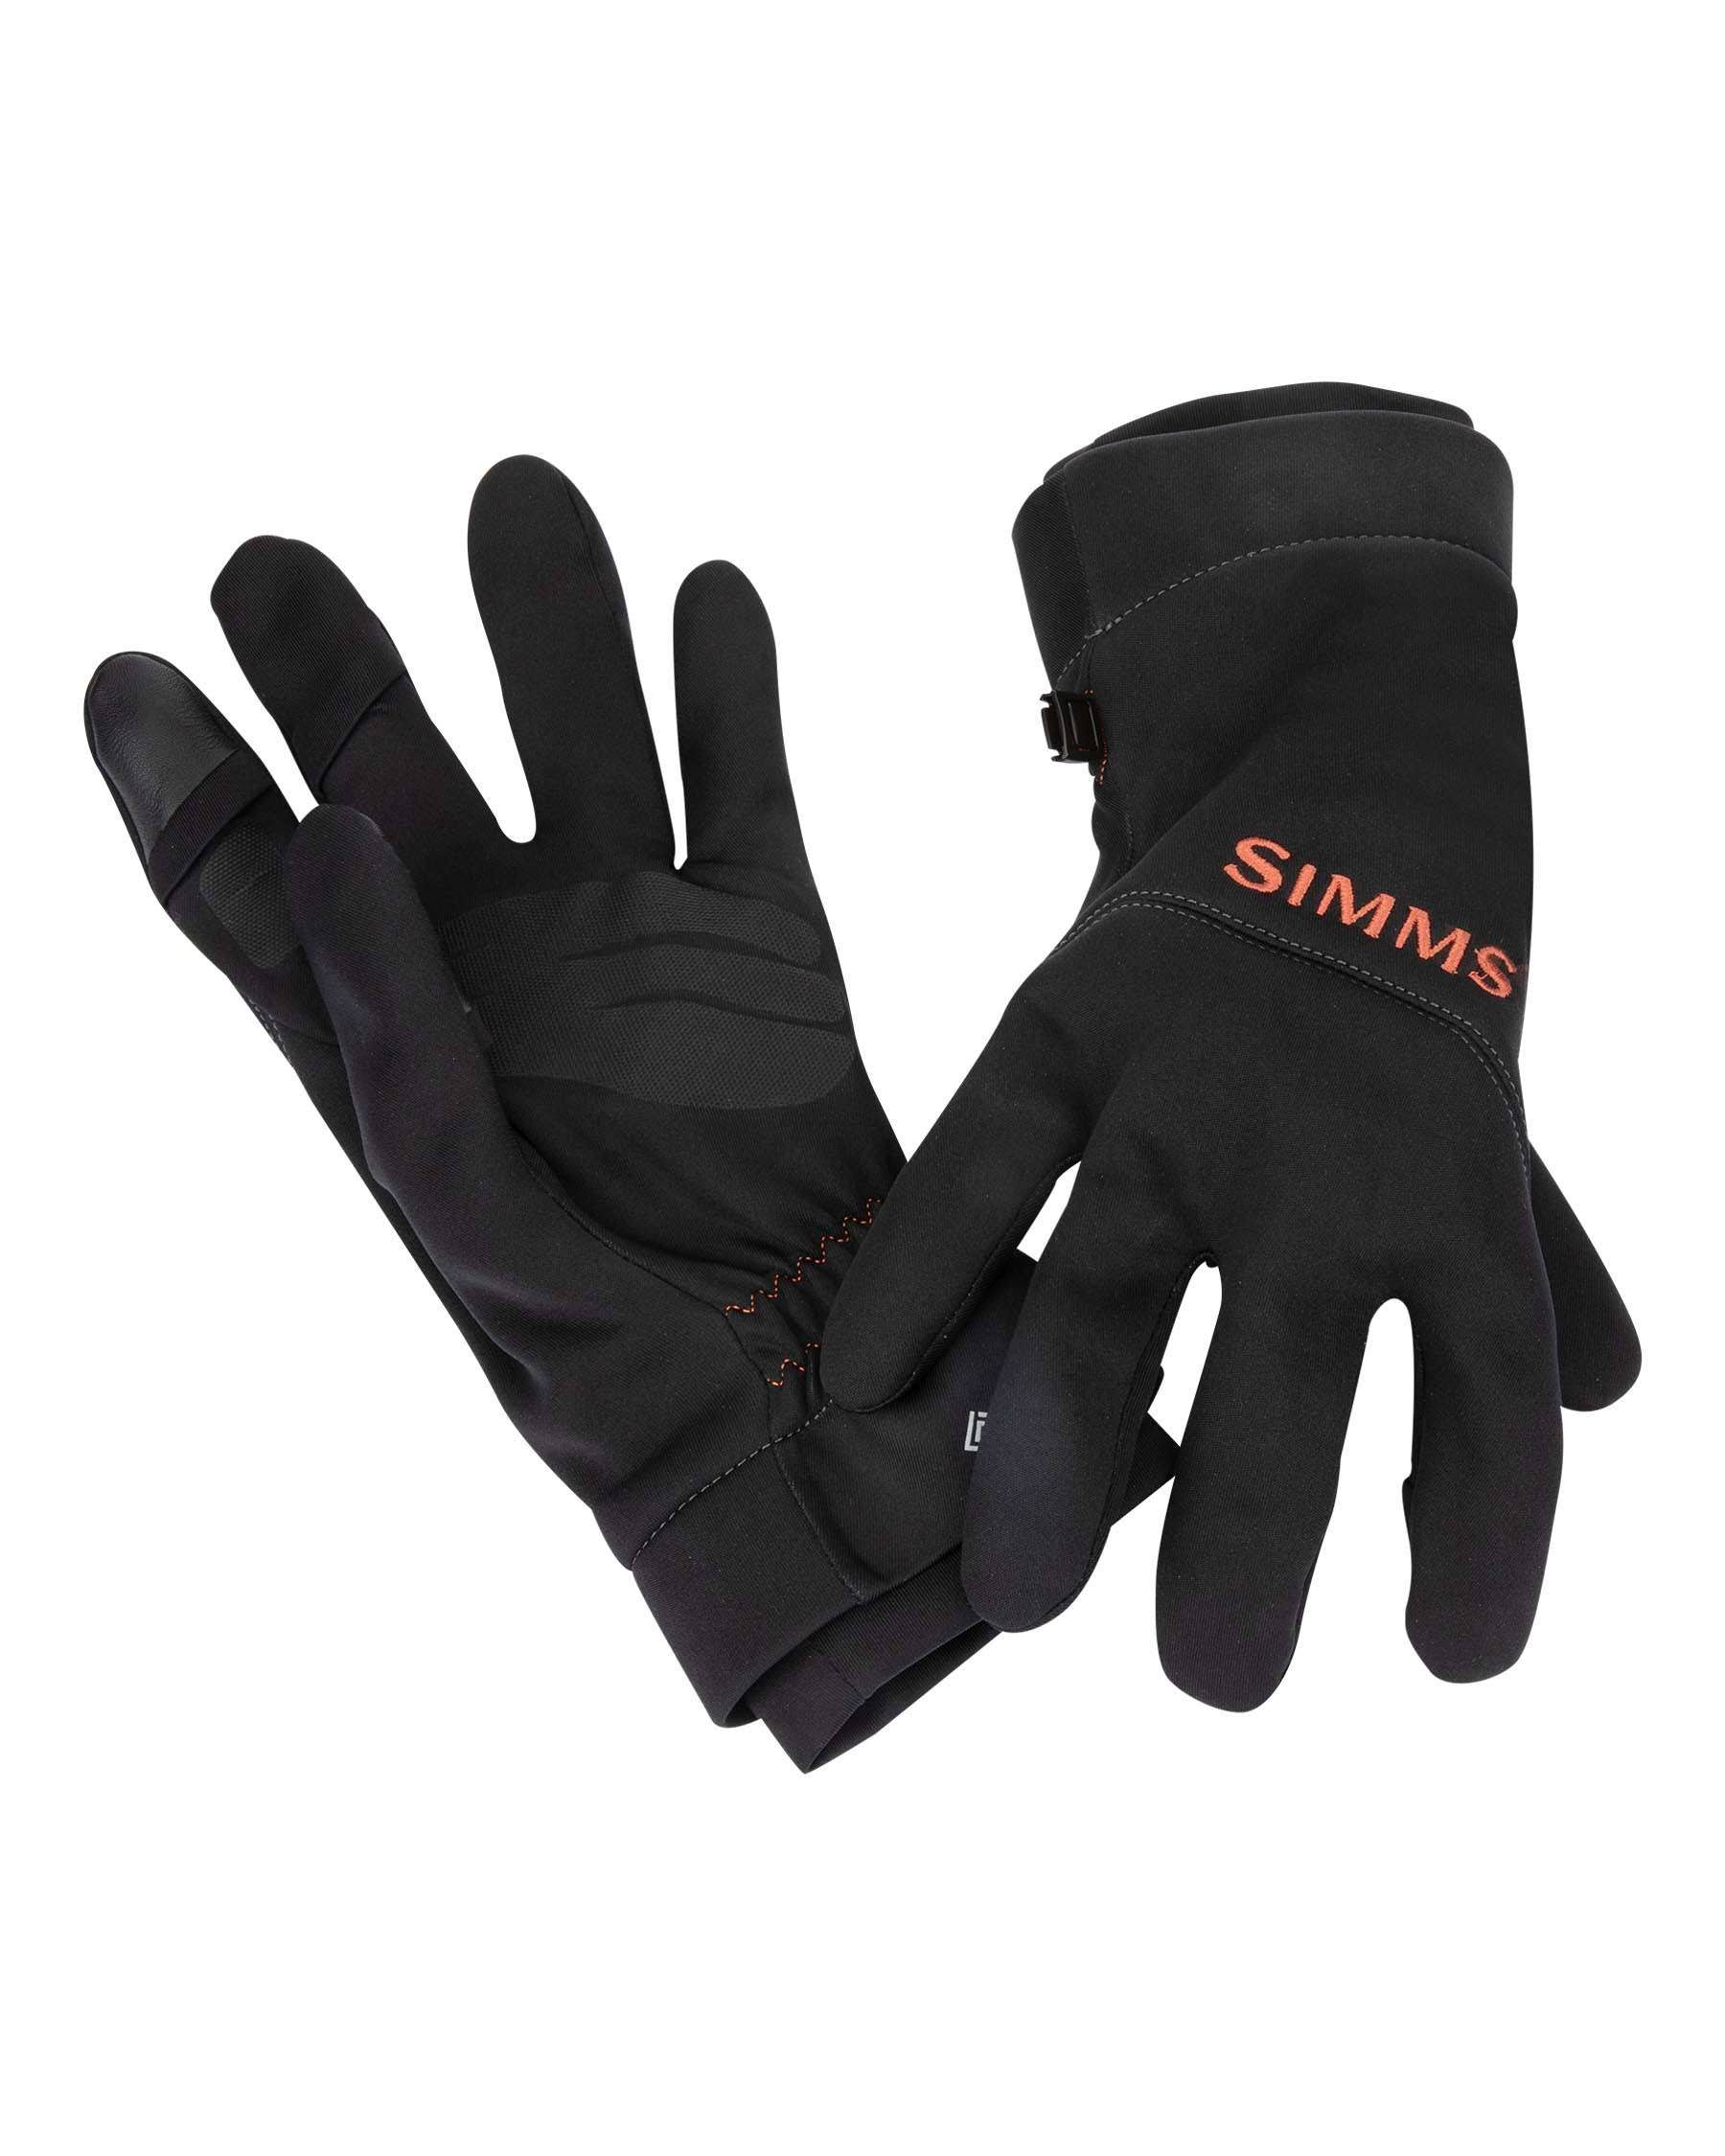 Simms GORE-TEX INFINIUM Flex Glove - Black - XL